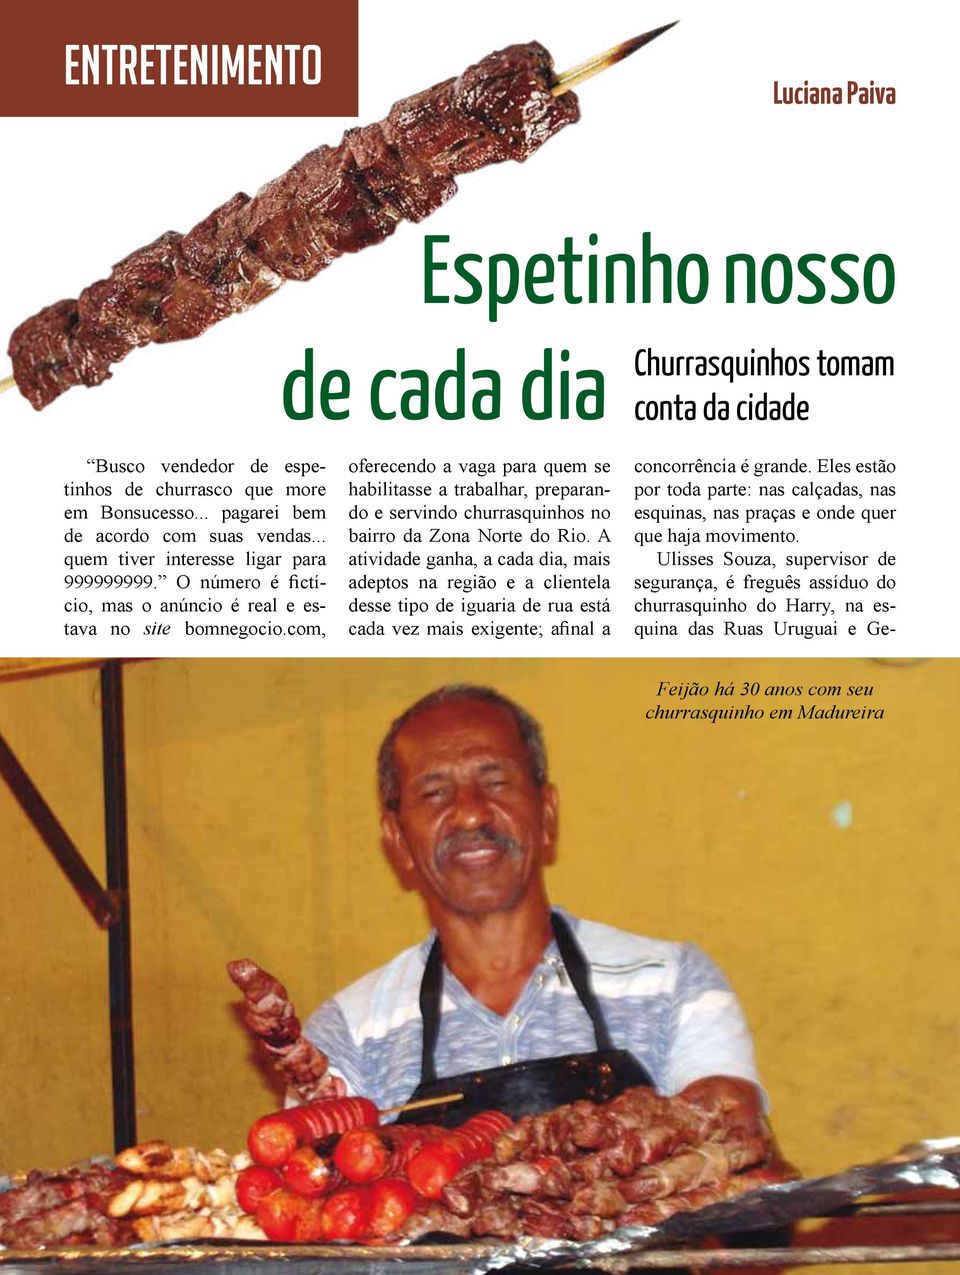 com, oferecendo a vaga para quem se habilitasse a trabalhar, preparando e servindo churrasquinhos no bairro da Zona Norte do Rio.